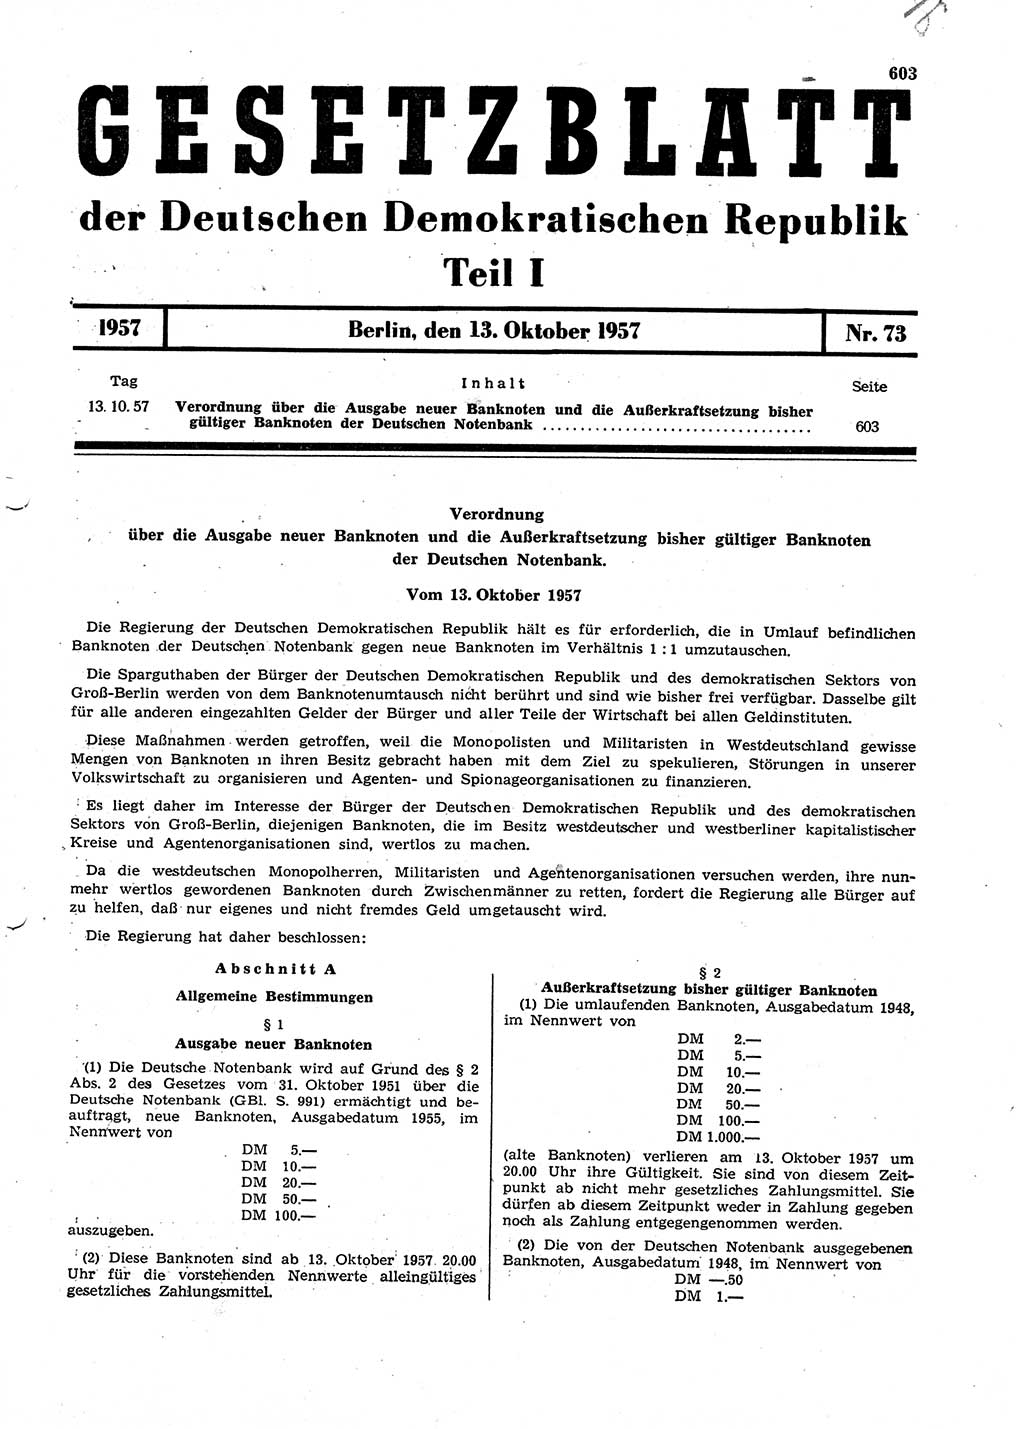 Gesetzblatt (GBl.) der Deutschen Demokratischen Republik (DDR) Teil Ⅰ 1957, Seite 603 (GBl. DDR Ⅰ 1957, S. 603)